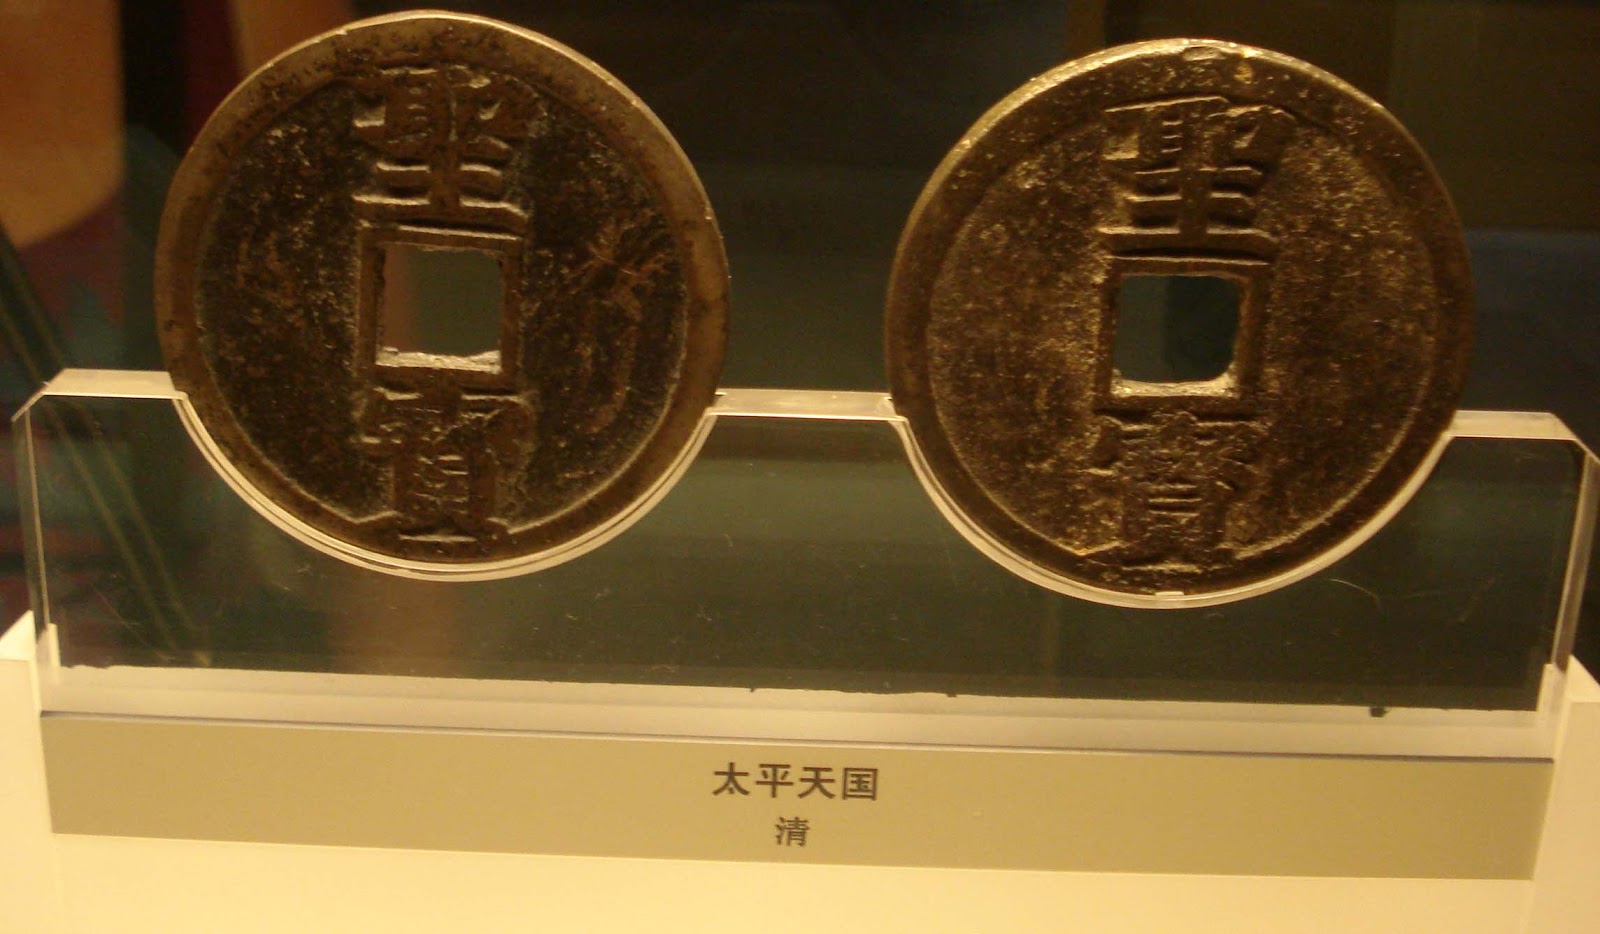 Beijing Ancient Coin Museum